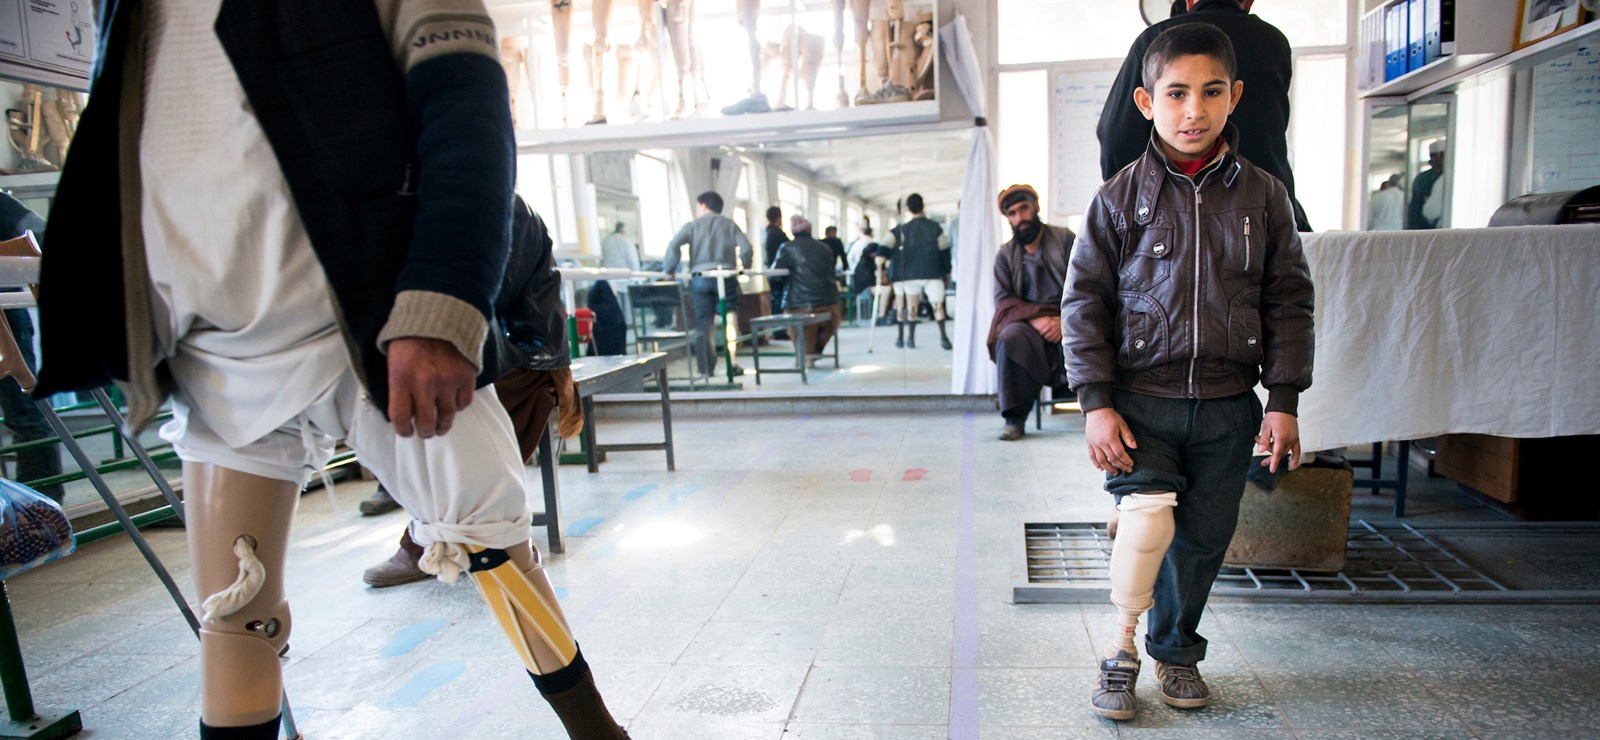 En ung gutt i Afghanistan som går med protese